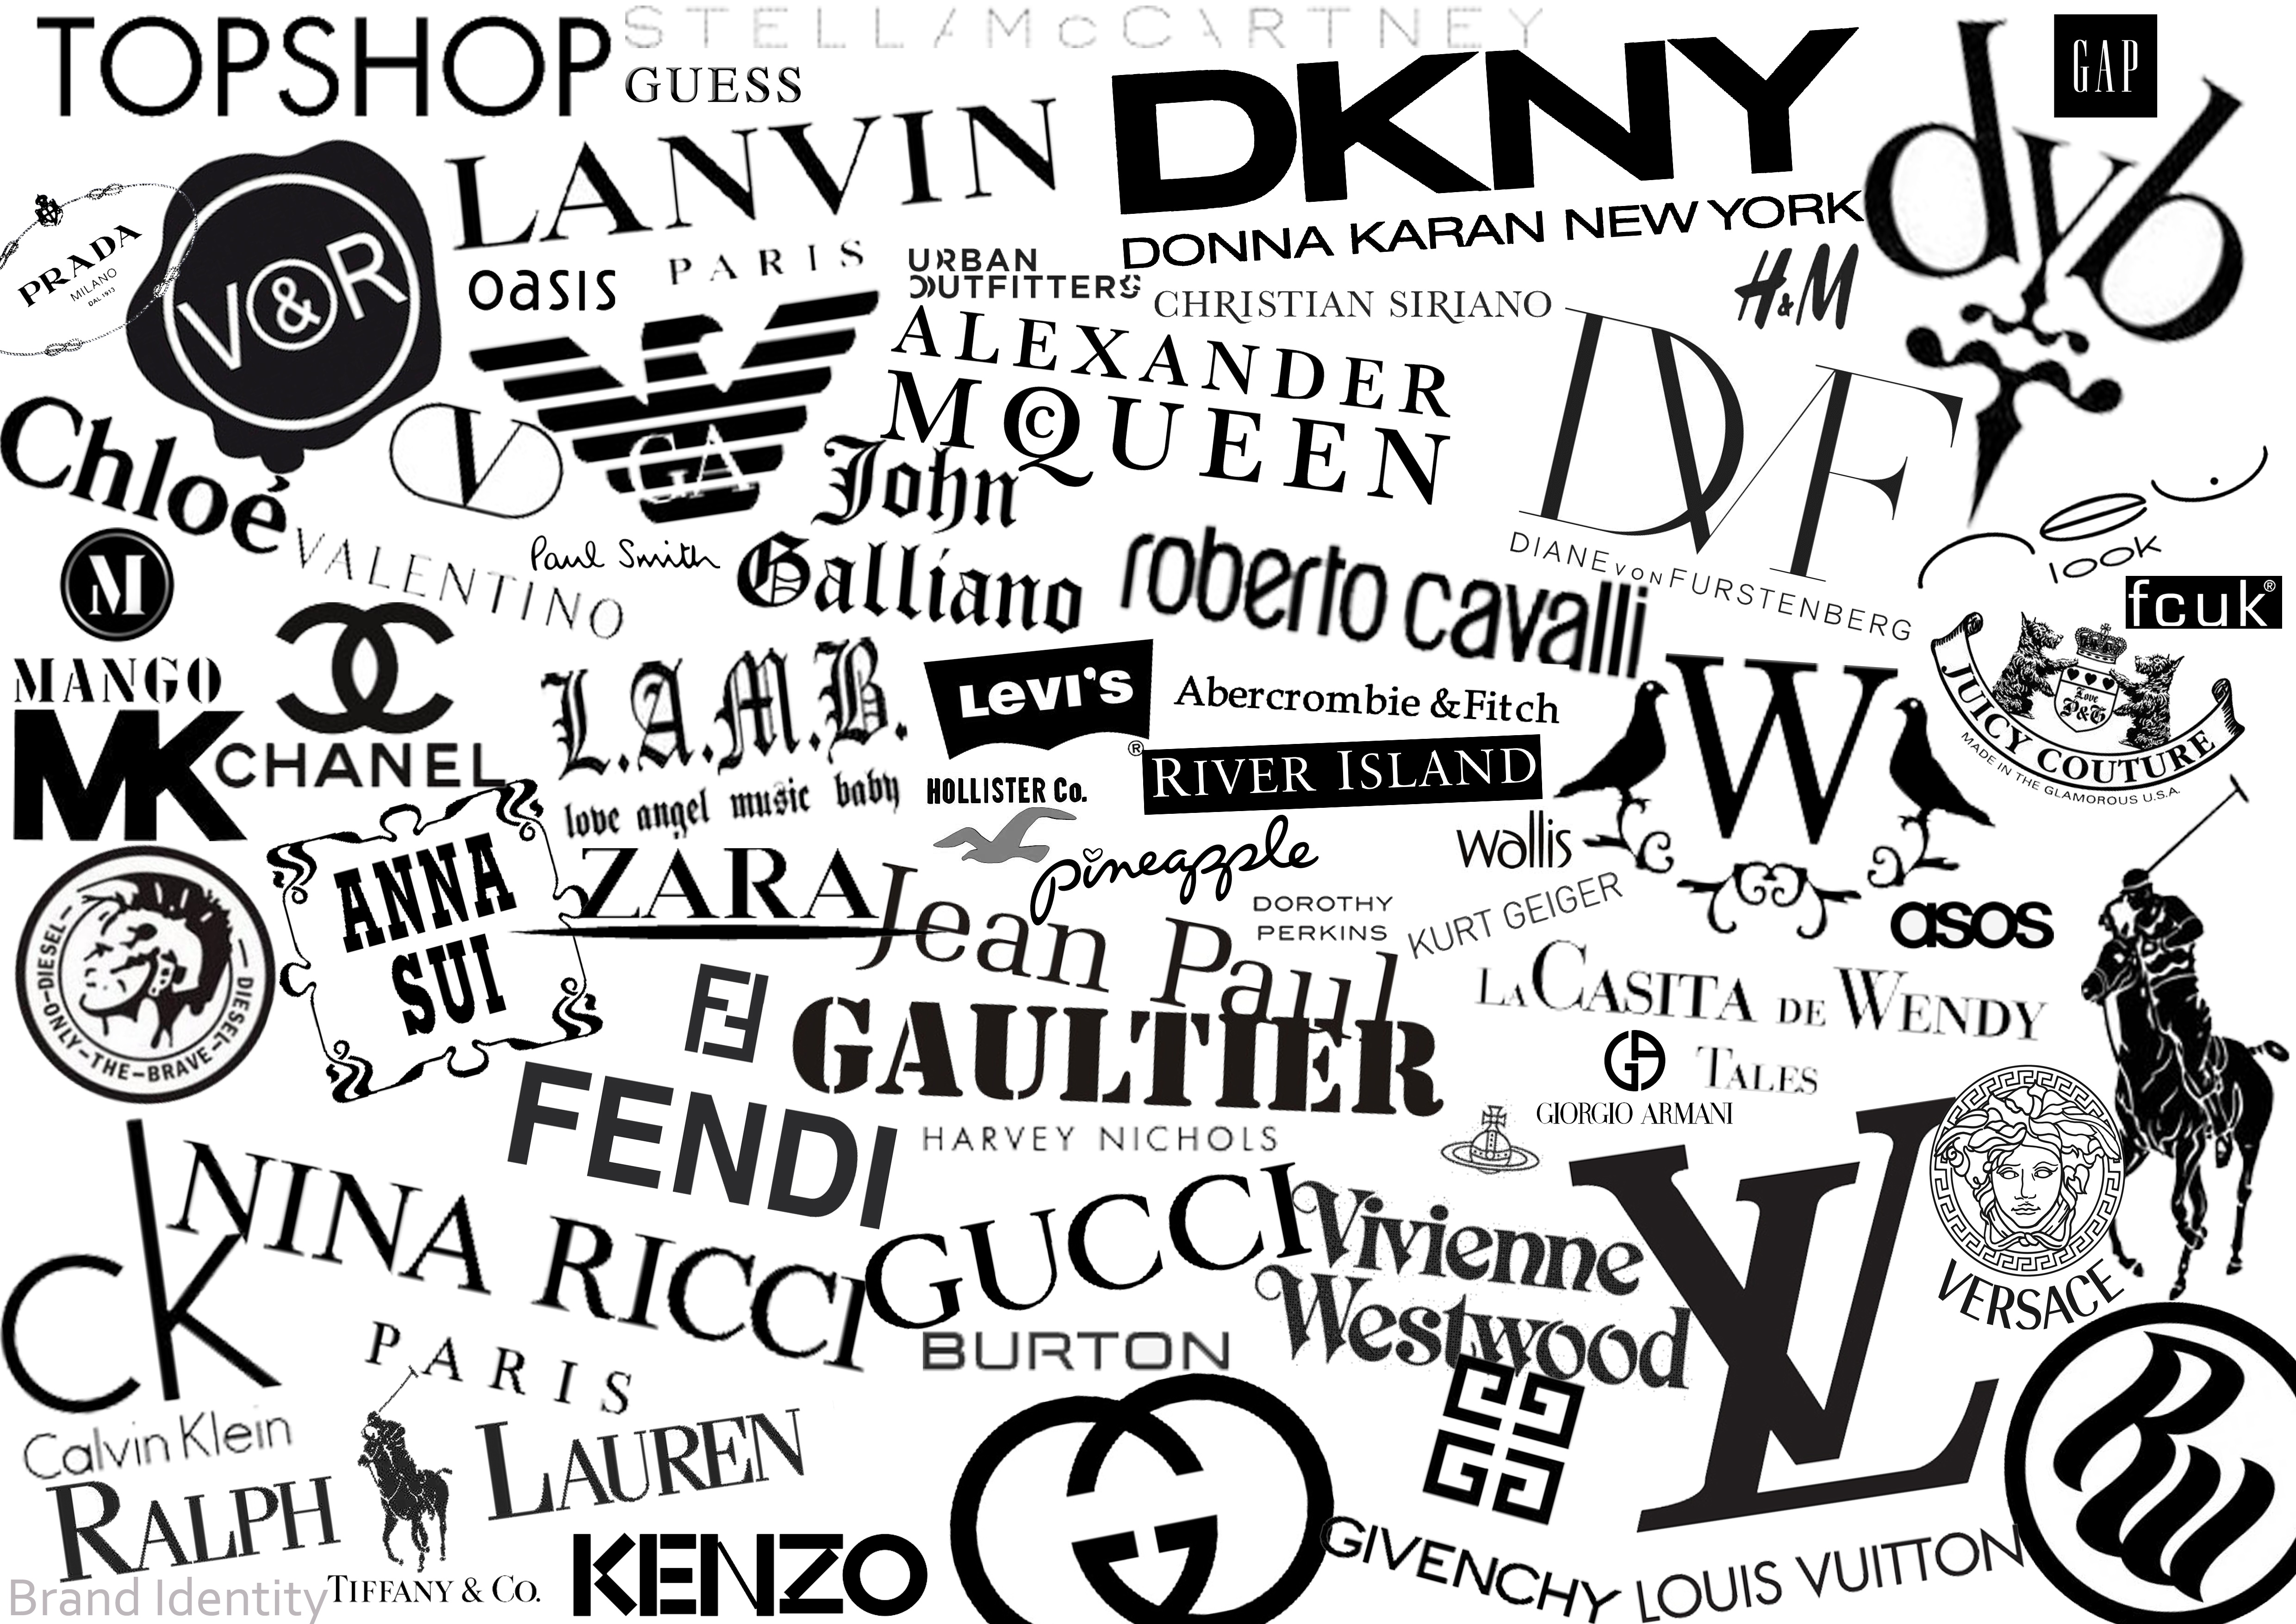 Не брендите! а вы правильно произносите имена из мира моды? (11.22.2015) - потребитель.